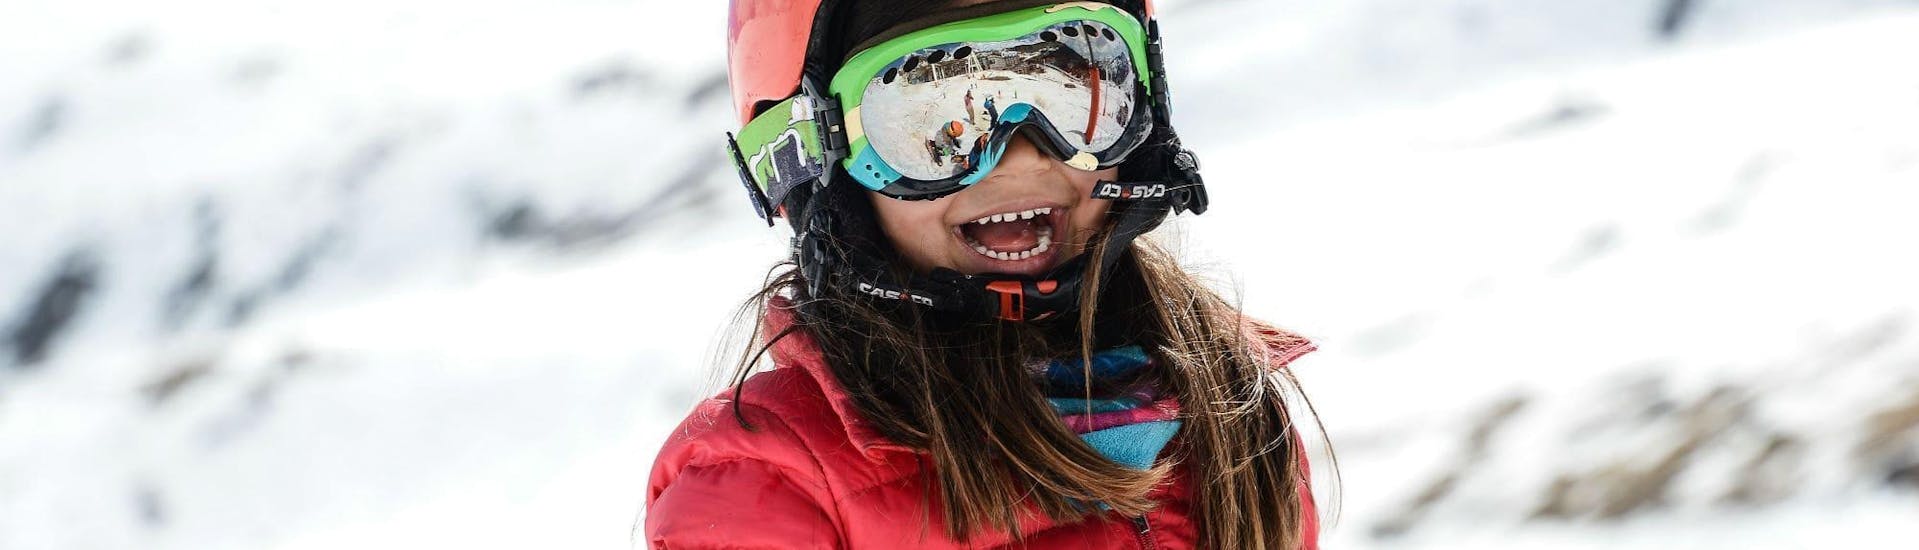 Une petite fille s'amuse tout en apprenant à skier pendant son Cours particulier de ski Enfants - Haute saison - Tous âges que l'équipe de l'école de ski Prosneige Val d'Isère prépare en fonction de ses besoins.